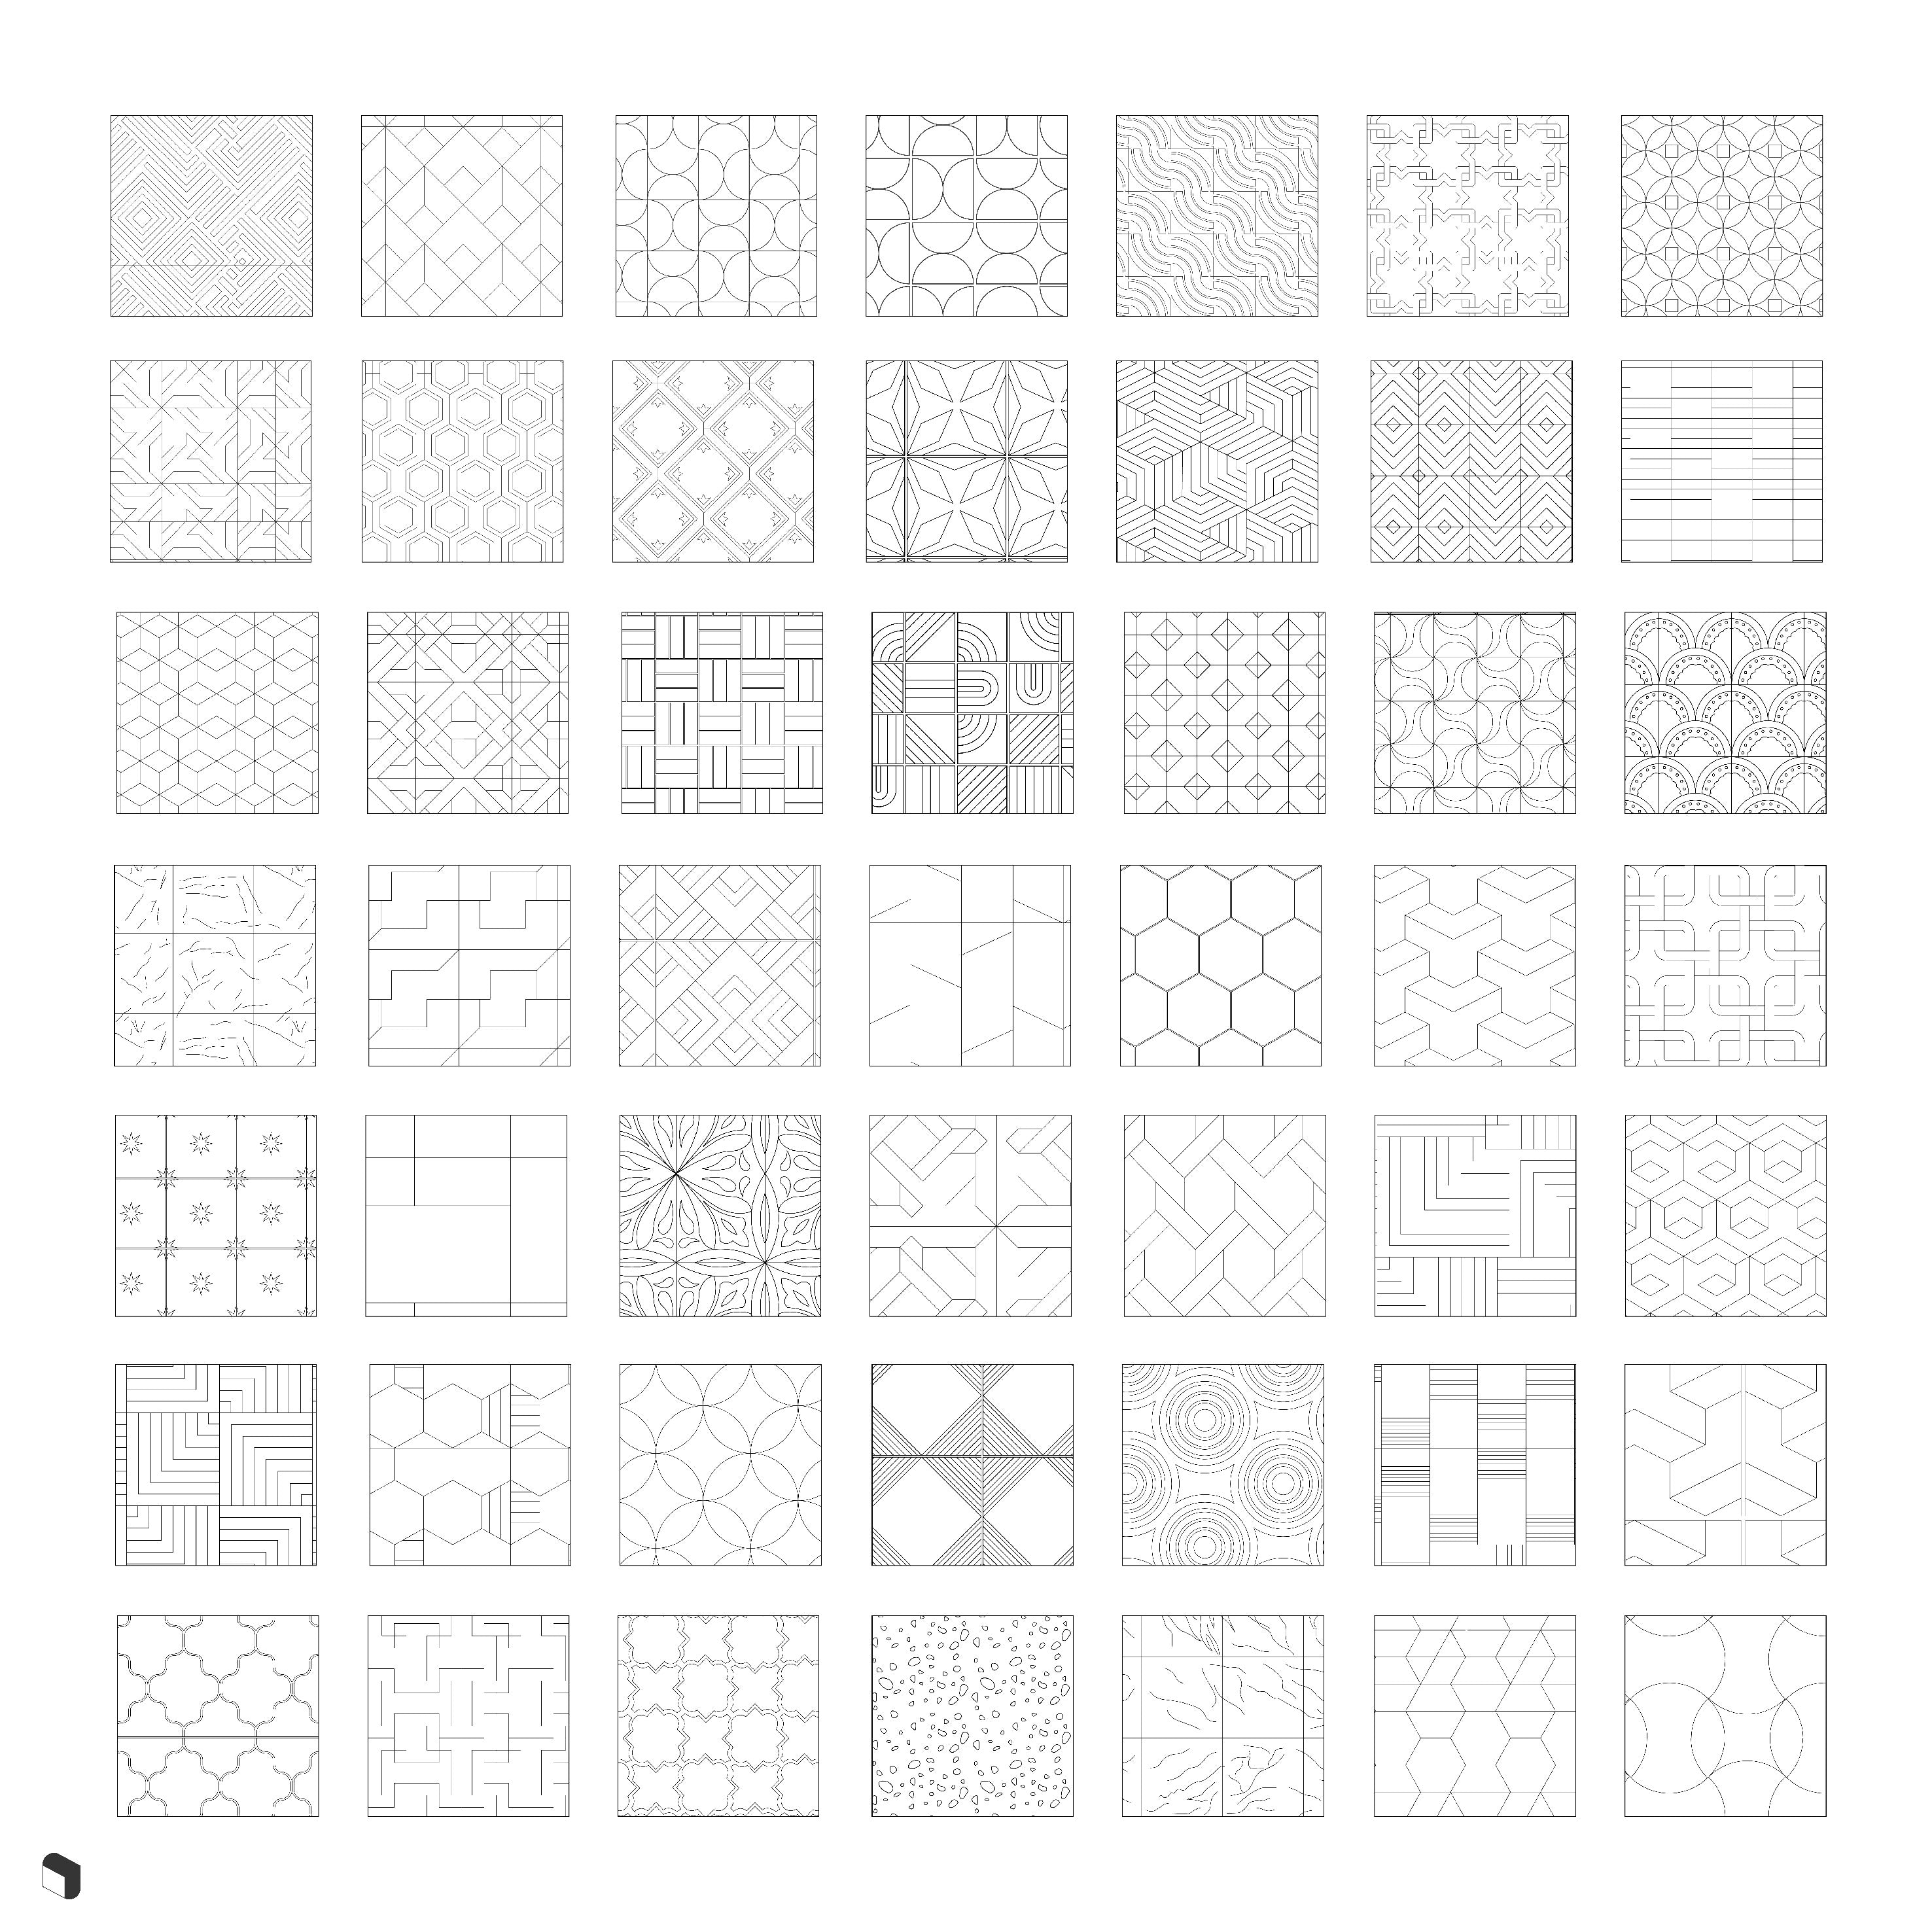 cad patterns illustrator download